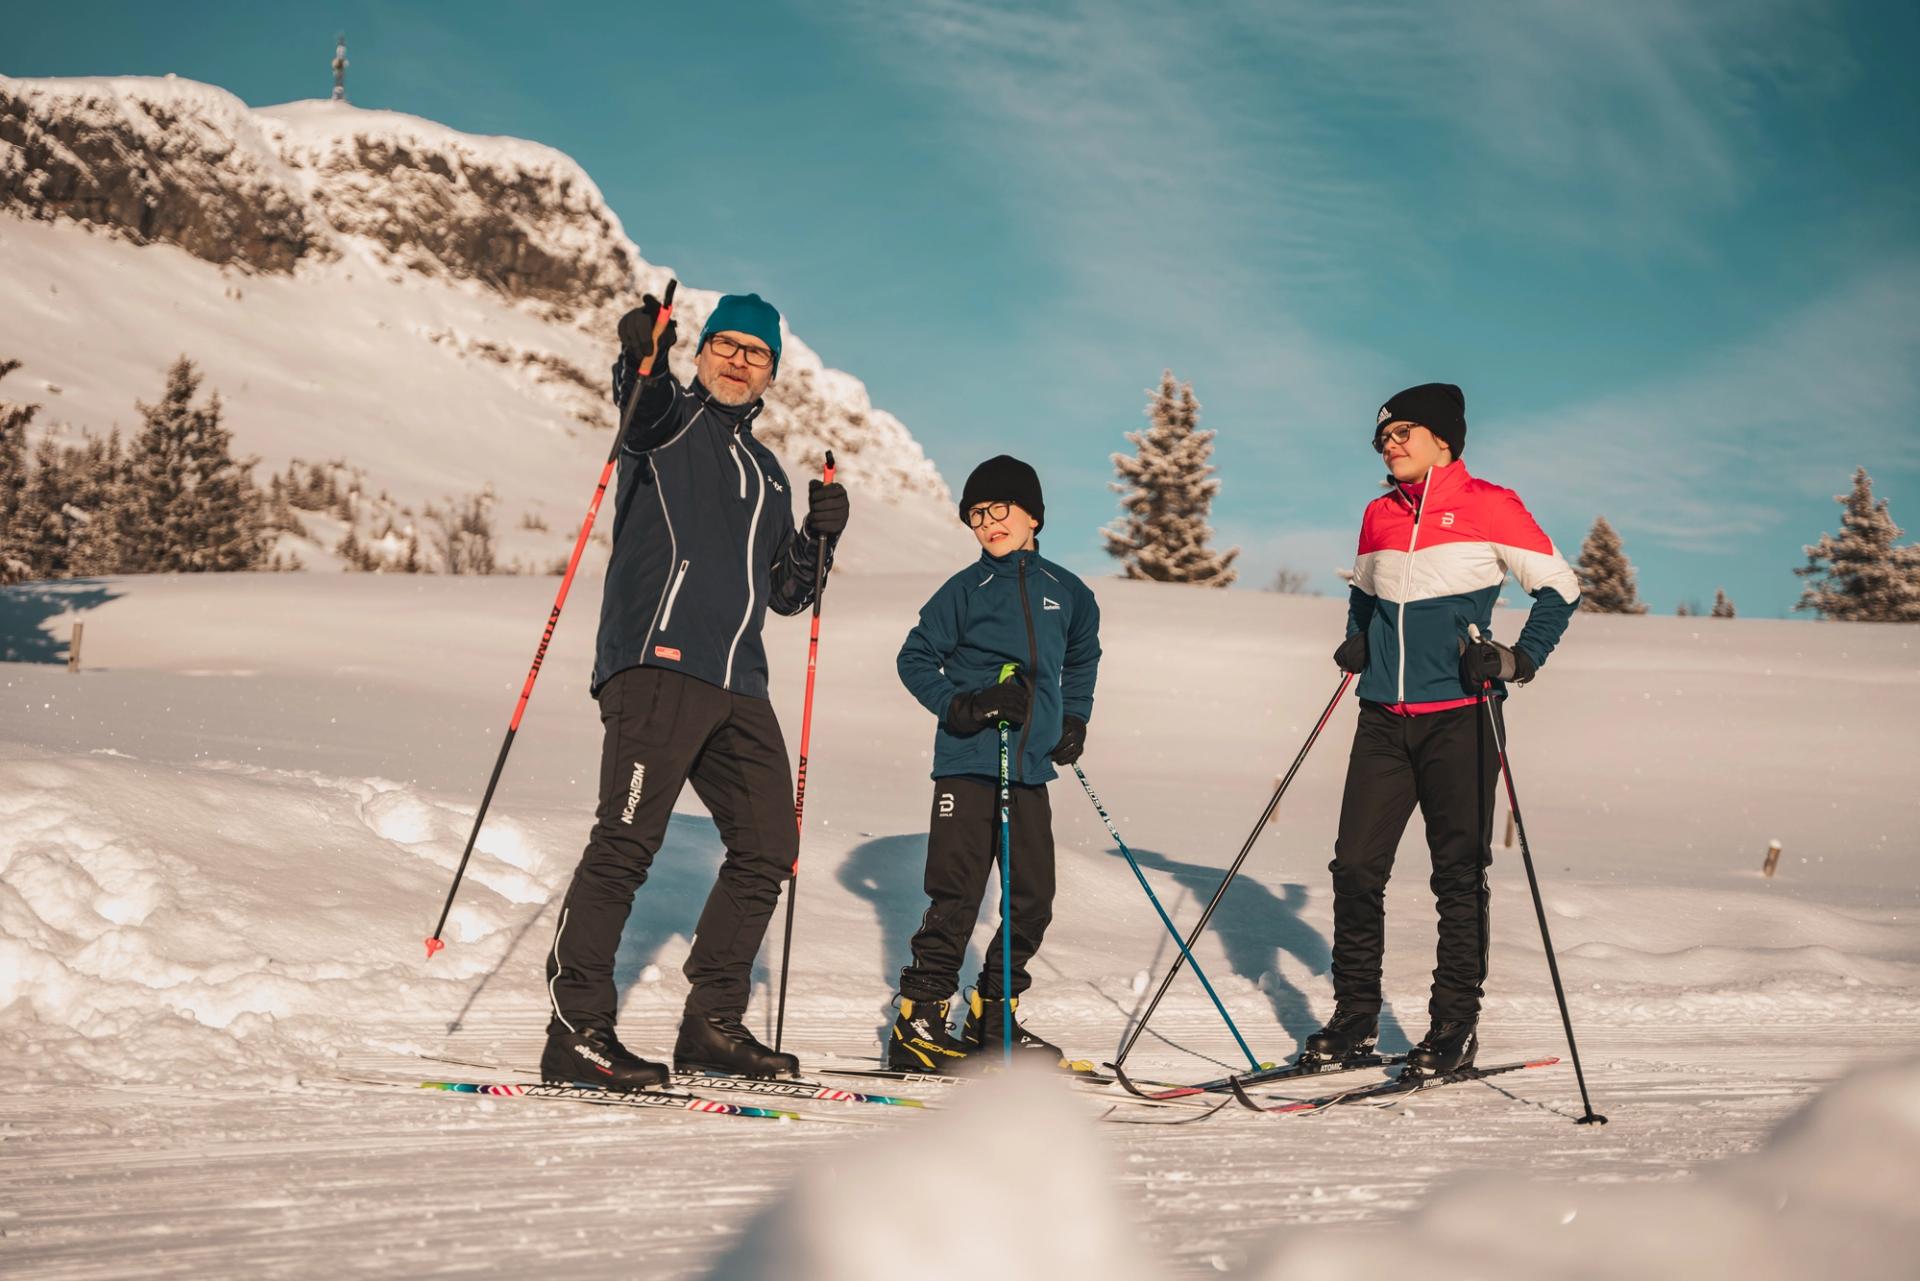 Jøra Bygg AS - Familien Jahnsen på skitur i nydelige omgivelser. Foto: Andreas Nilsson